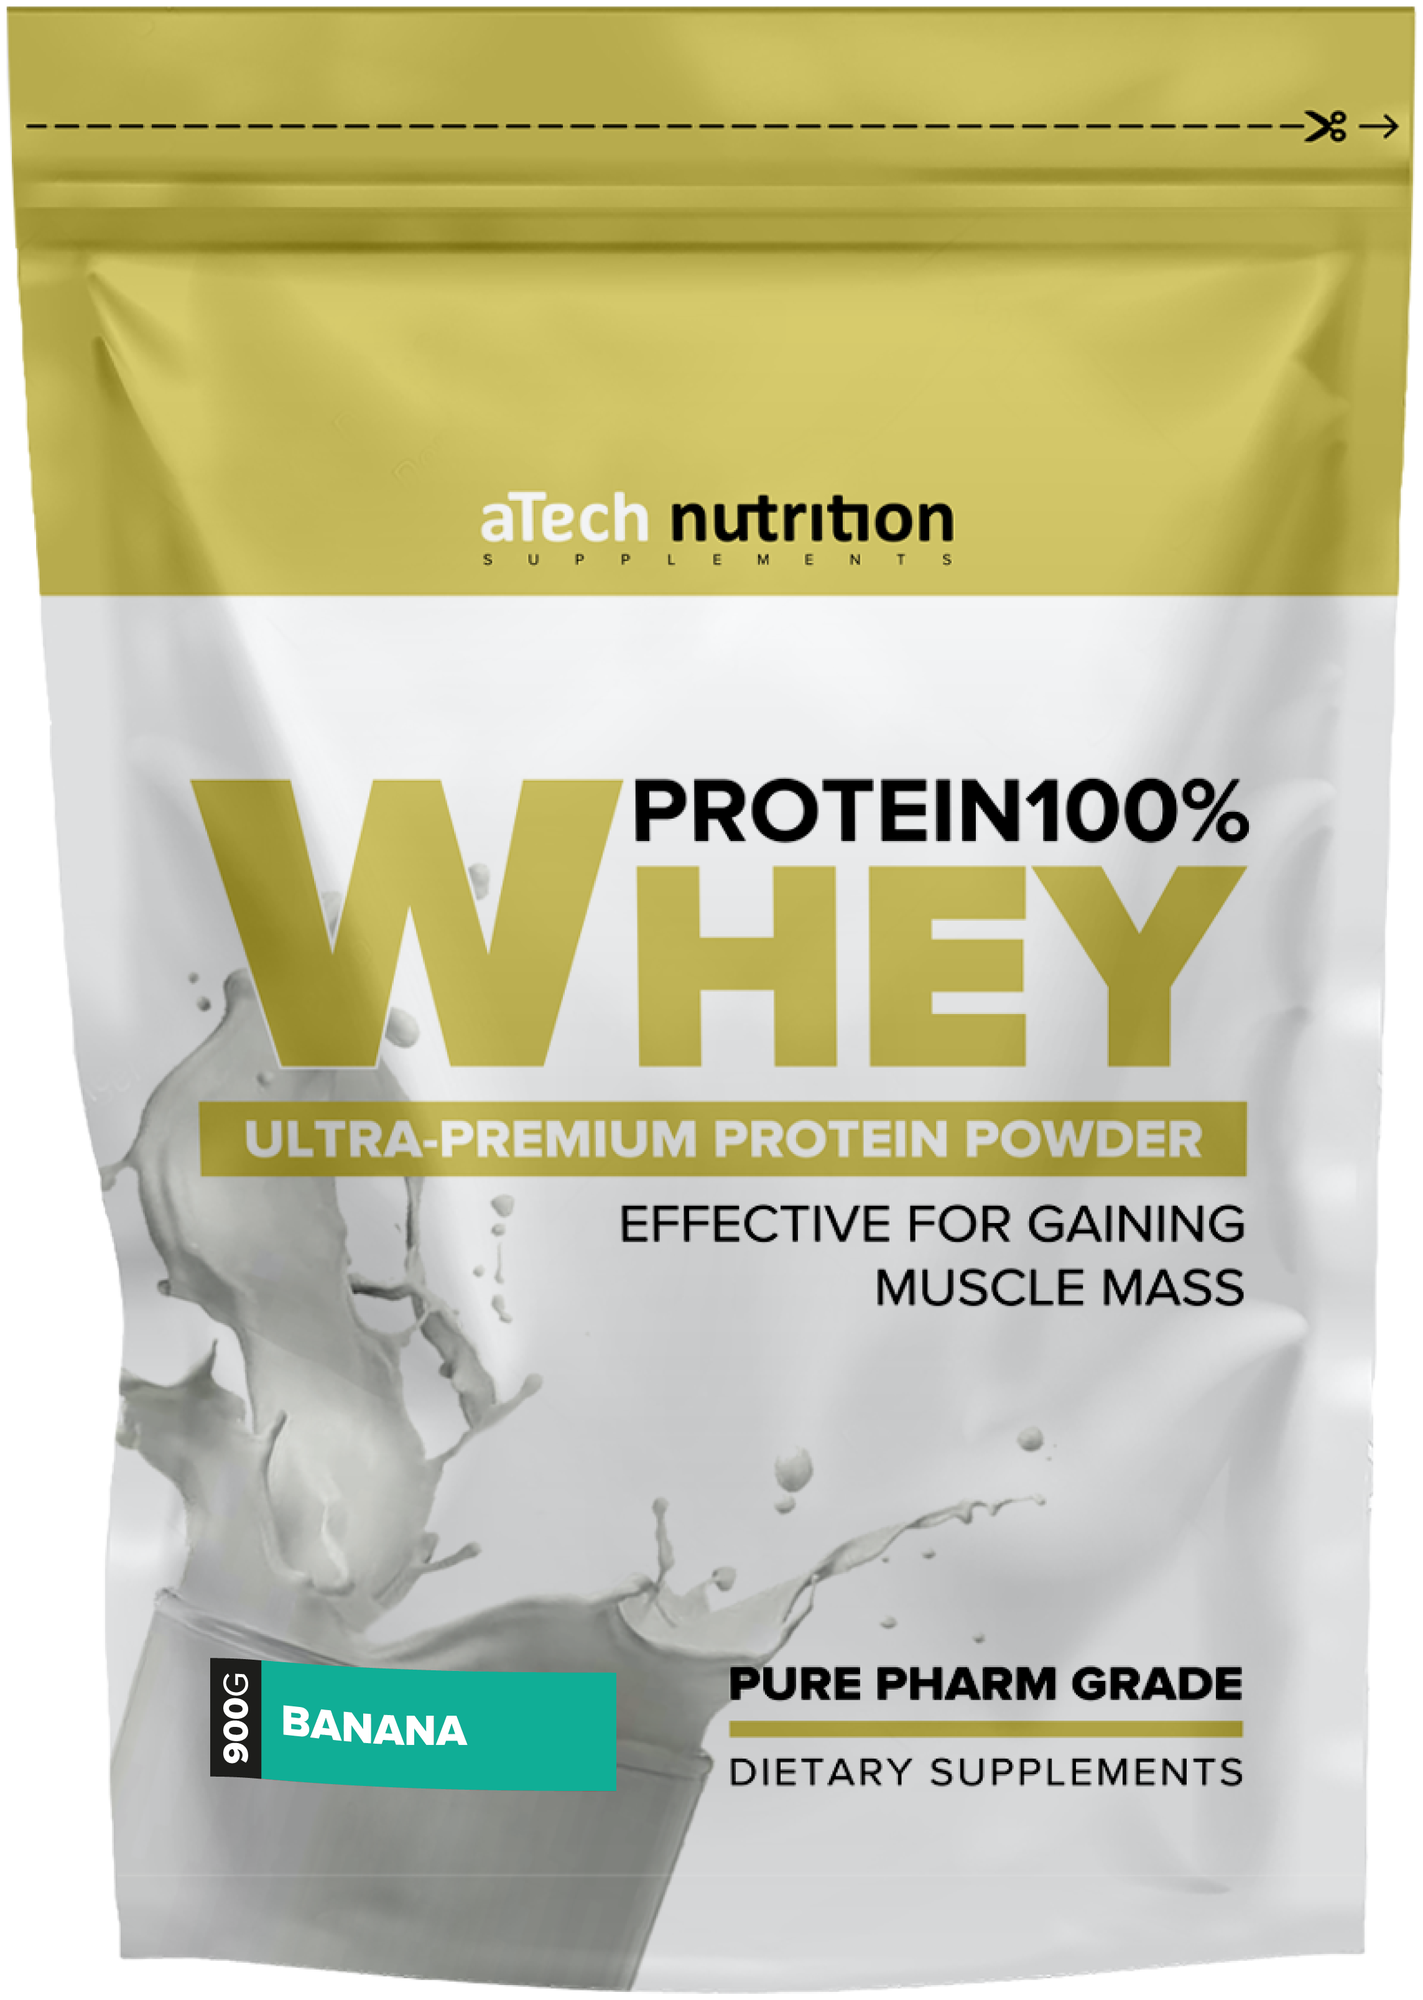 Специализированный пищевой продукт для питания спортсменов "Вэй протеин 100% Спешл Сериес" ("Whey protein 100% Special Series") пакет 0,9 кг со вкусом "Банан"